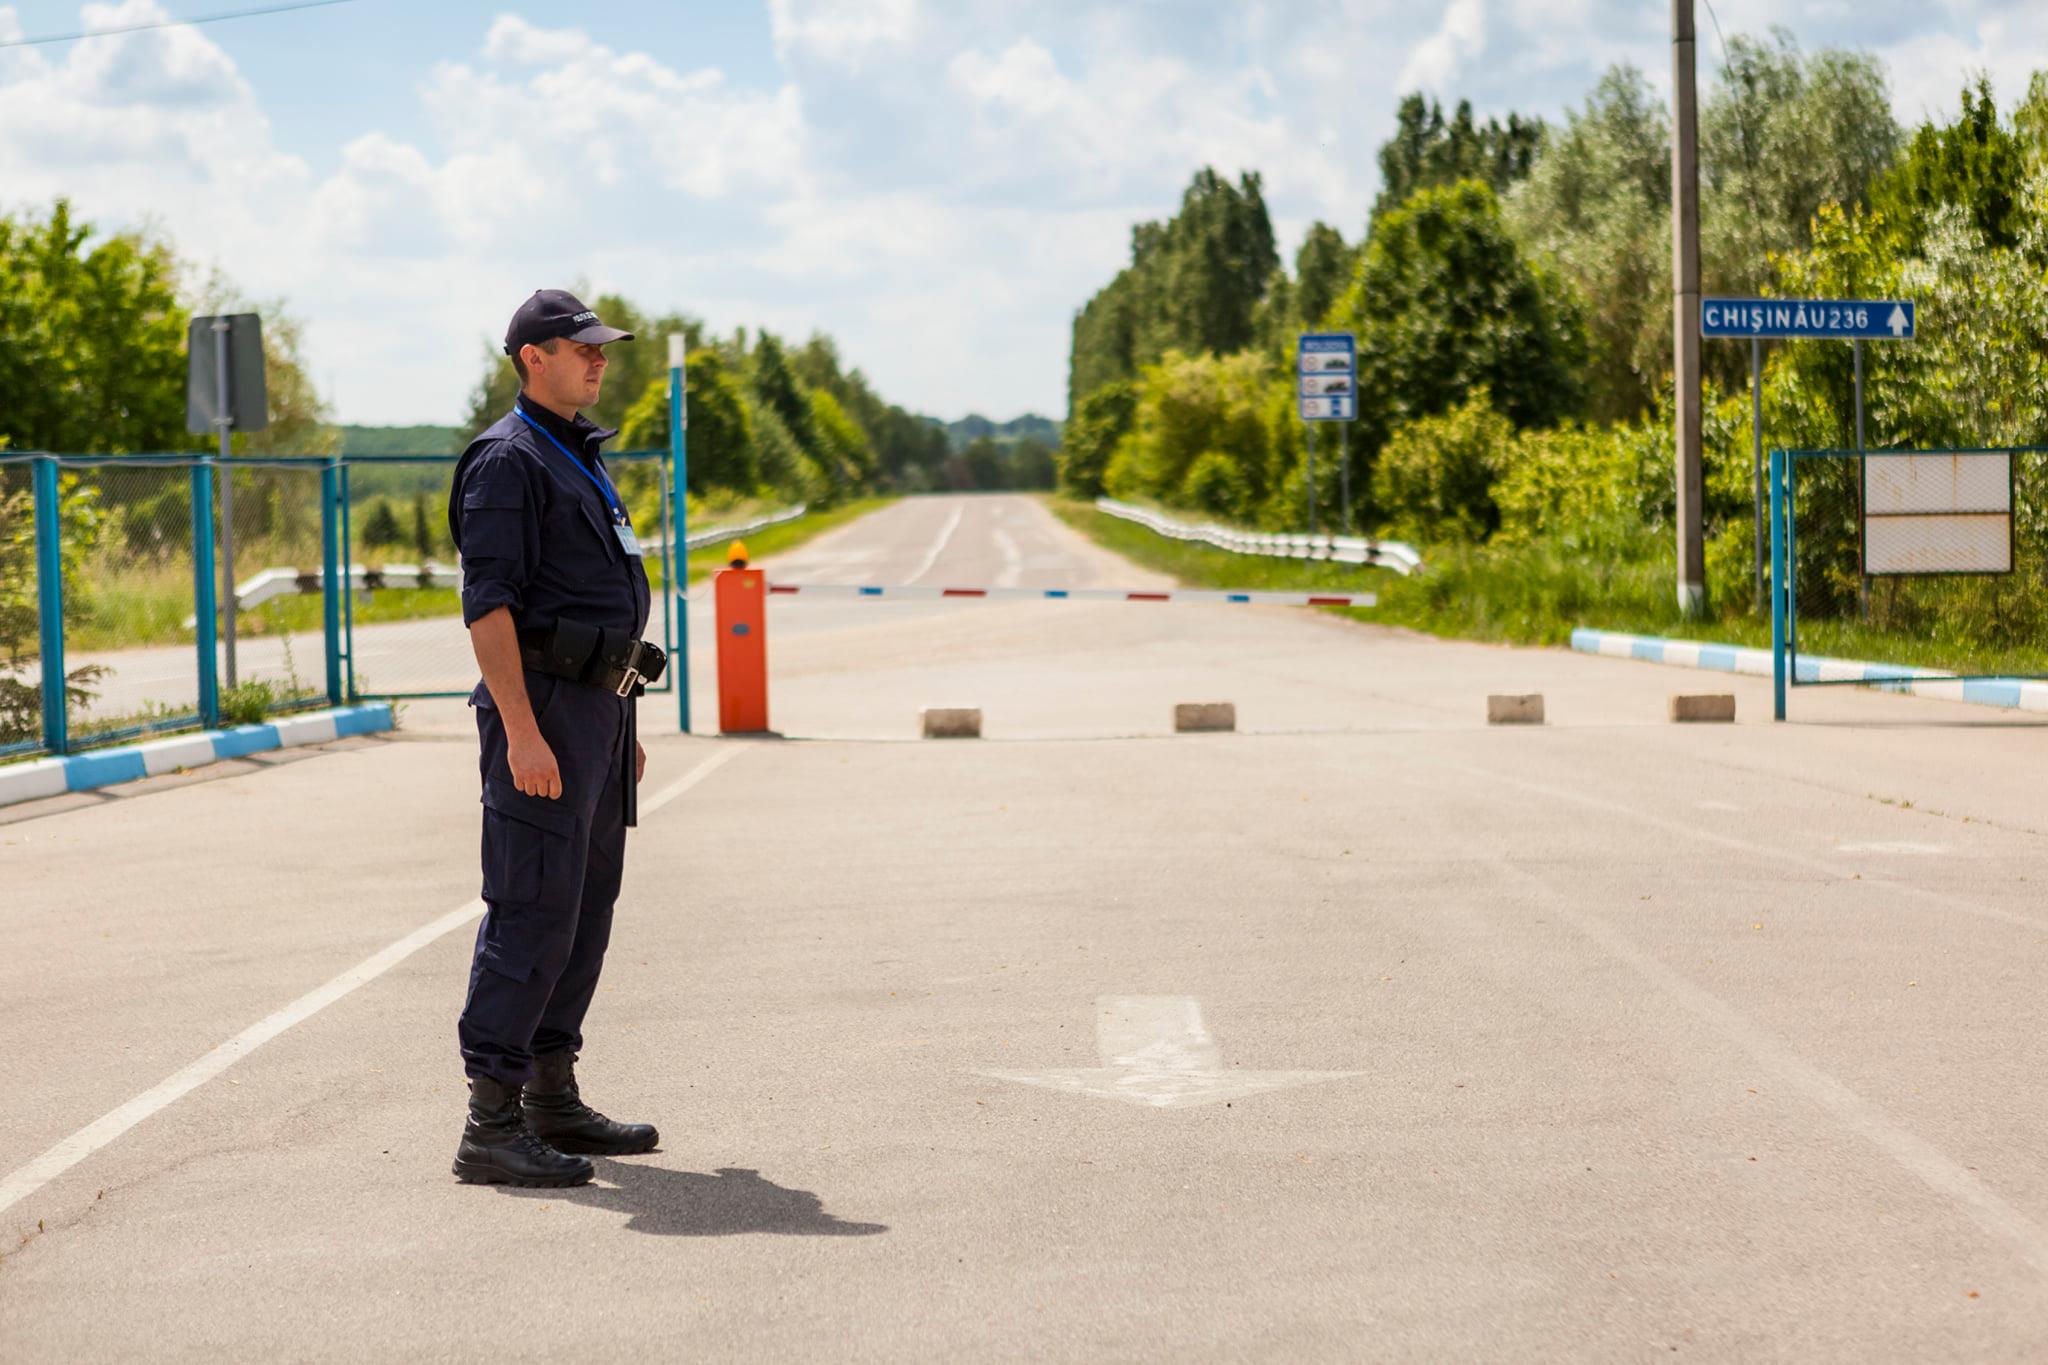 Как пересечь границу казахстан россия нелегально: Подростки из России нелегально пересекли границу с Казахстаном